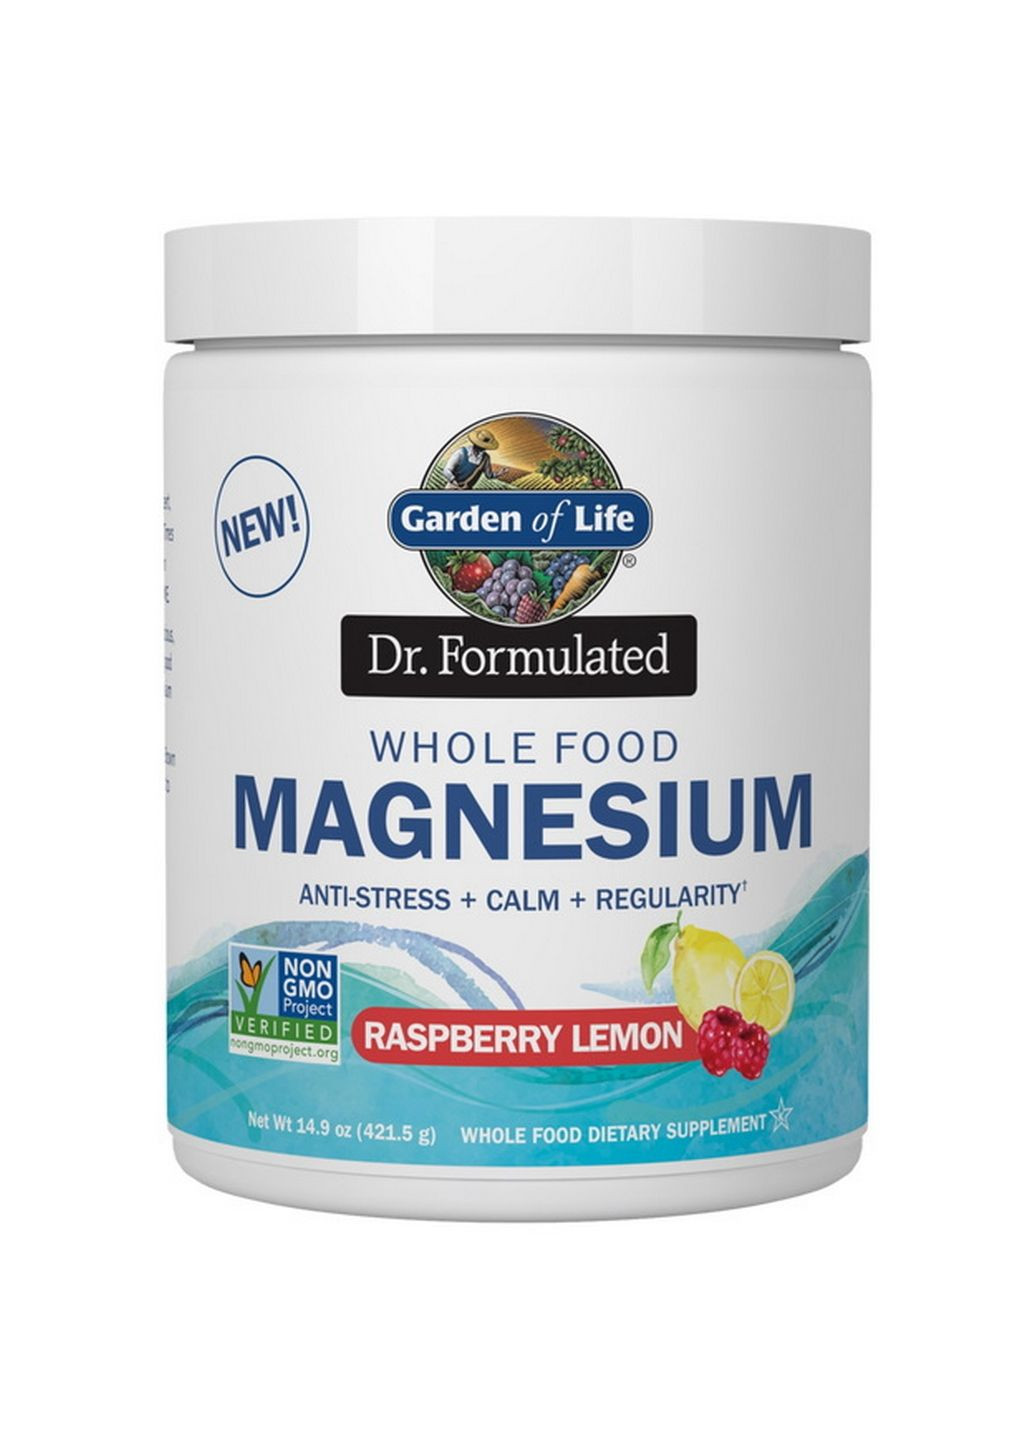 Витамины и минералы Dr. Formulated Whole Food Magnesium, 420 грамм Лимон-малина (421 грамм) Garden of Life (293419907)